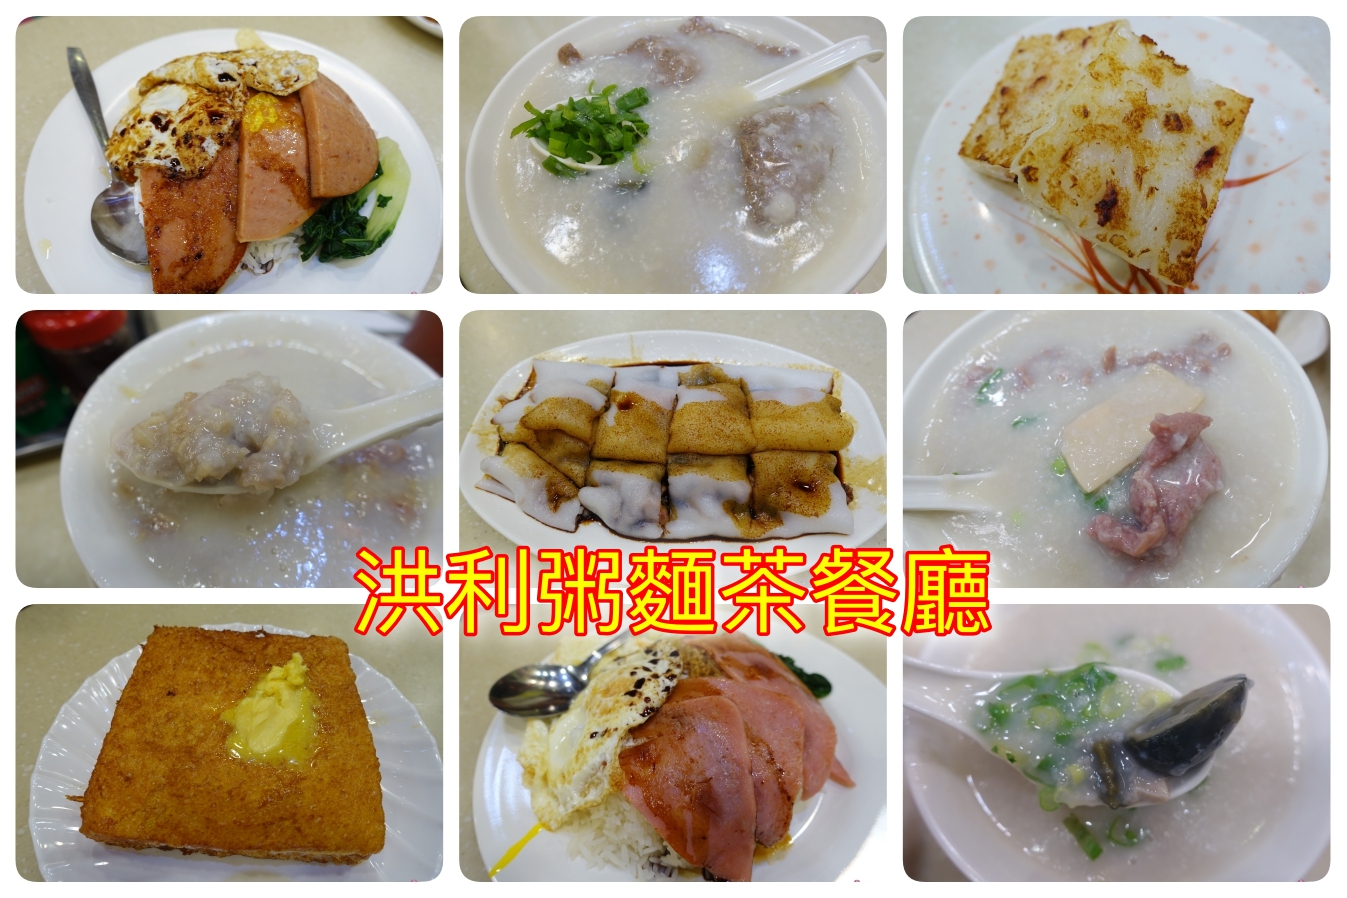 延伸閱讀：[香港美食]洪利粥店茶餐廳~來到尖沙咀就是要吃道地的粥品名店．品嚐入口即化的生滾粥